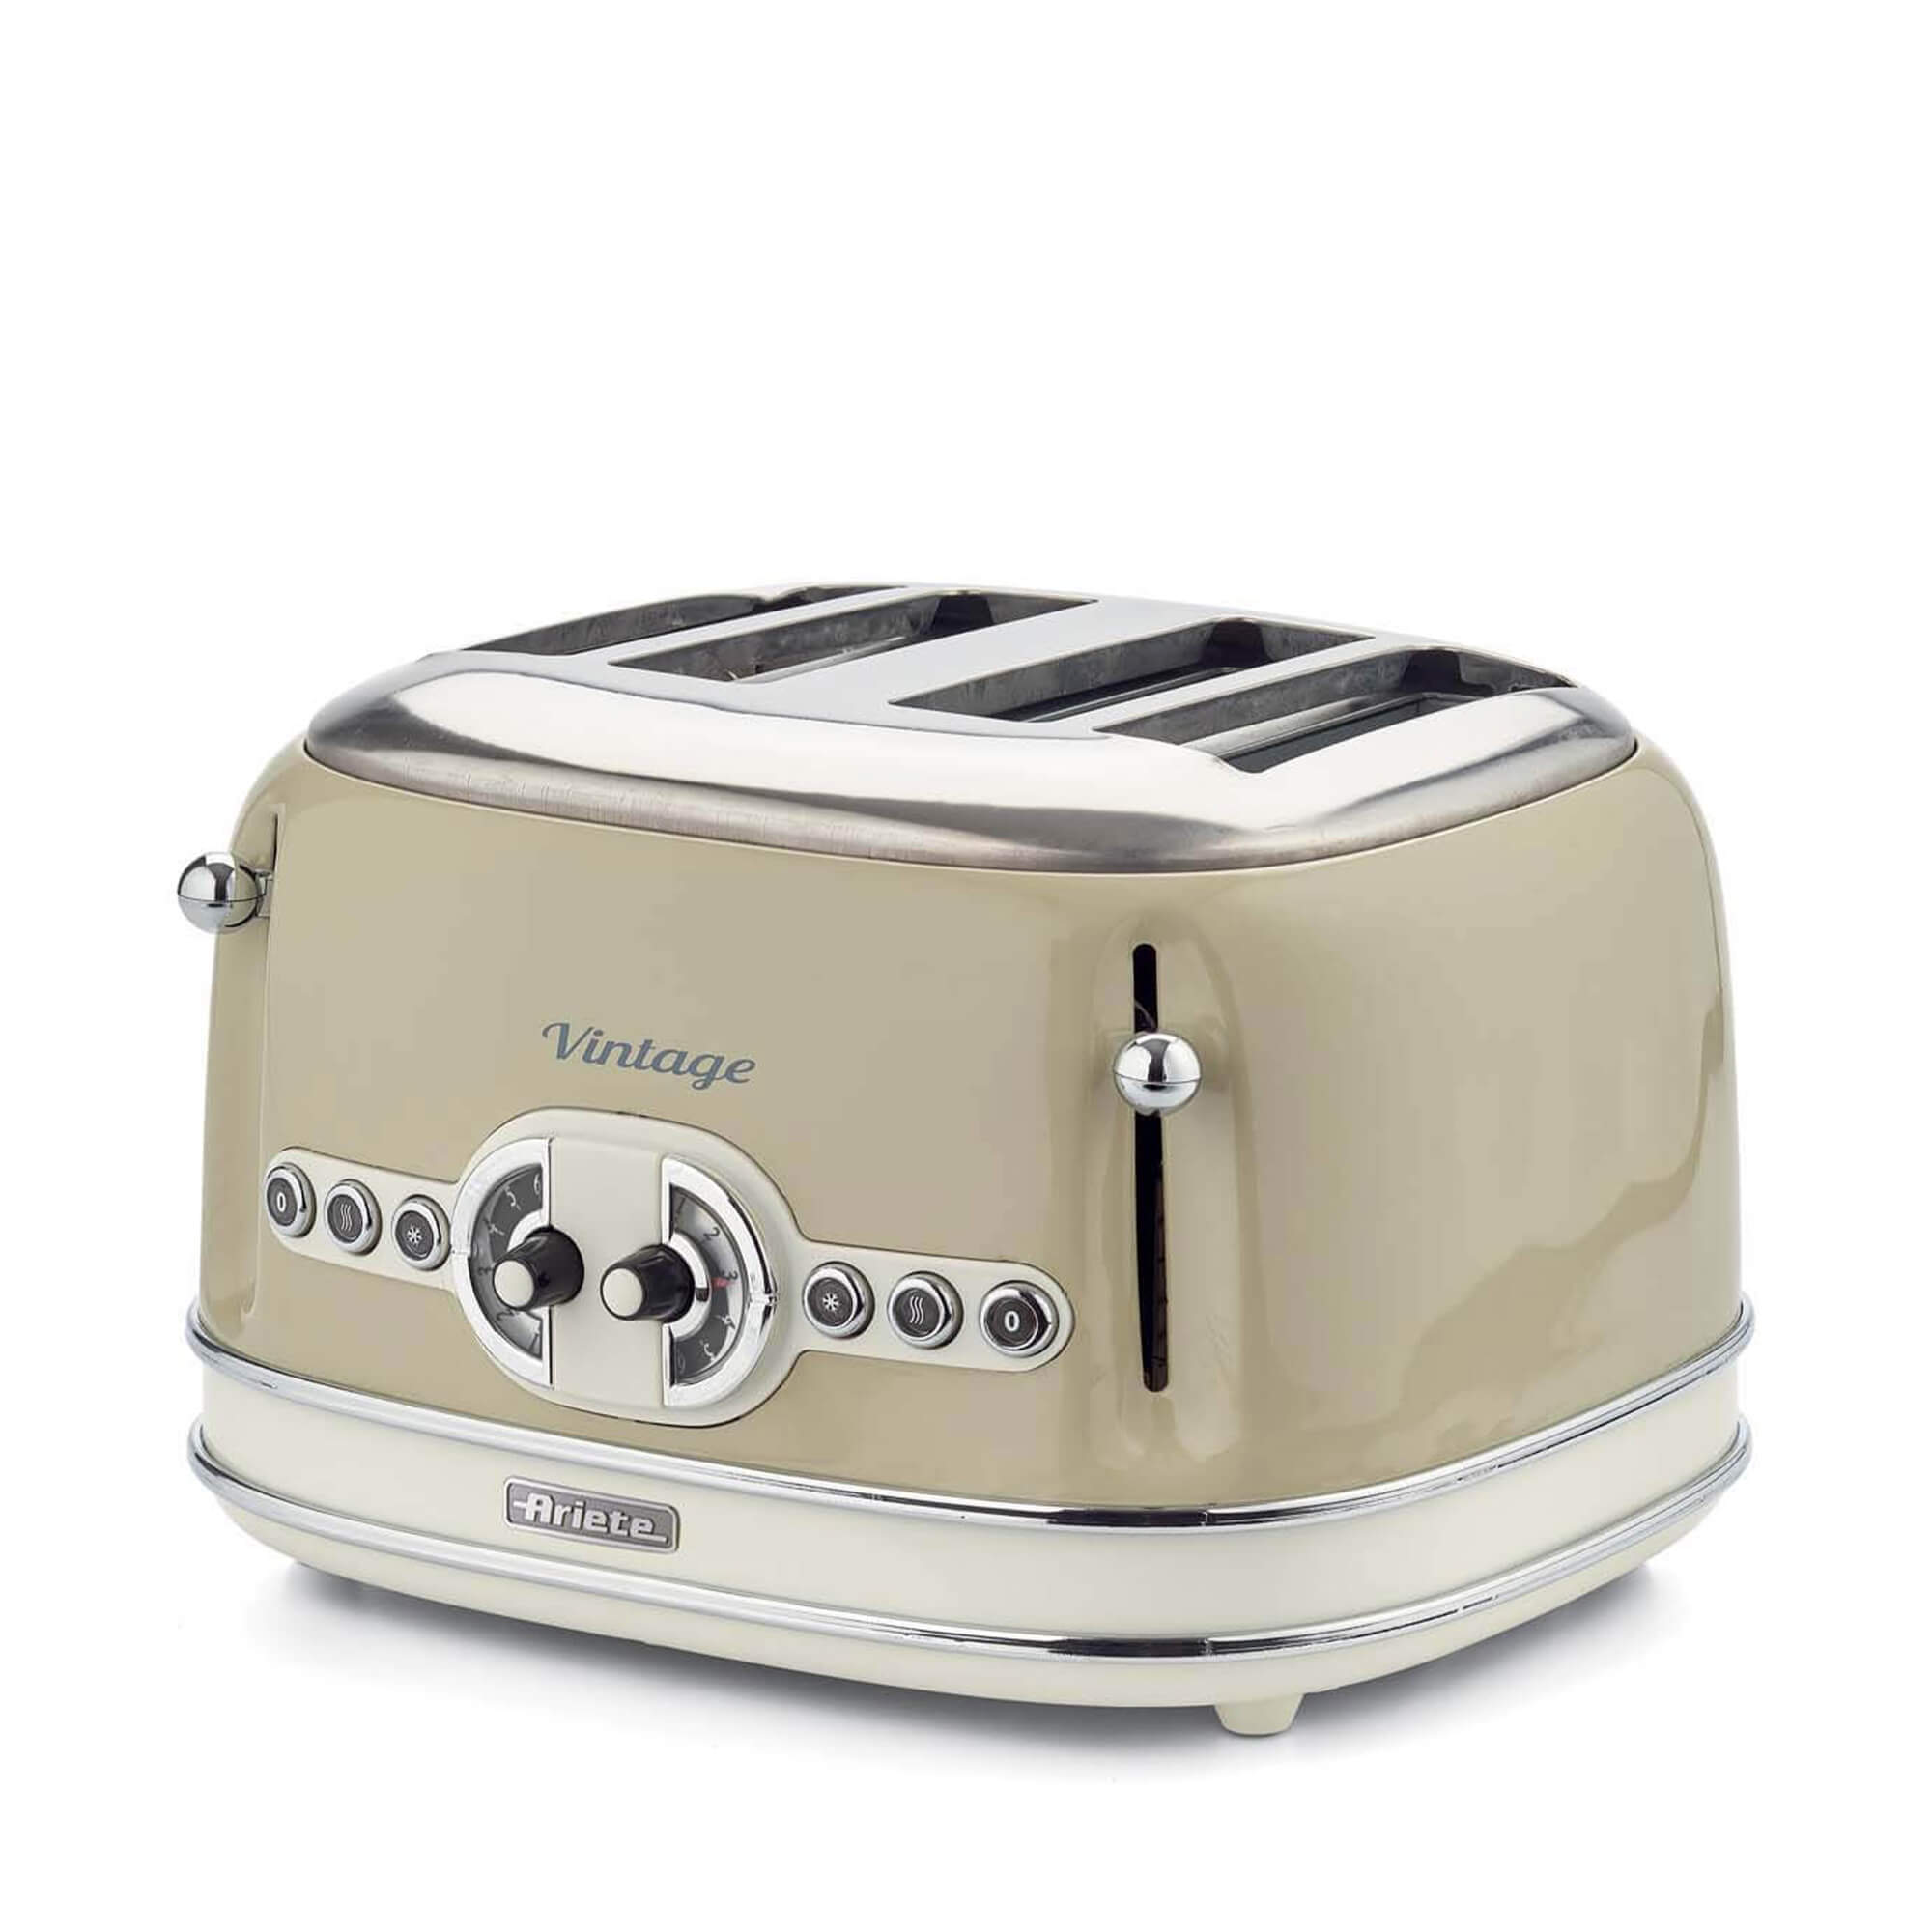 Vintage toaster 4 slice Ariete